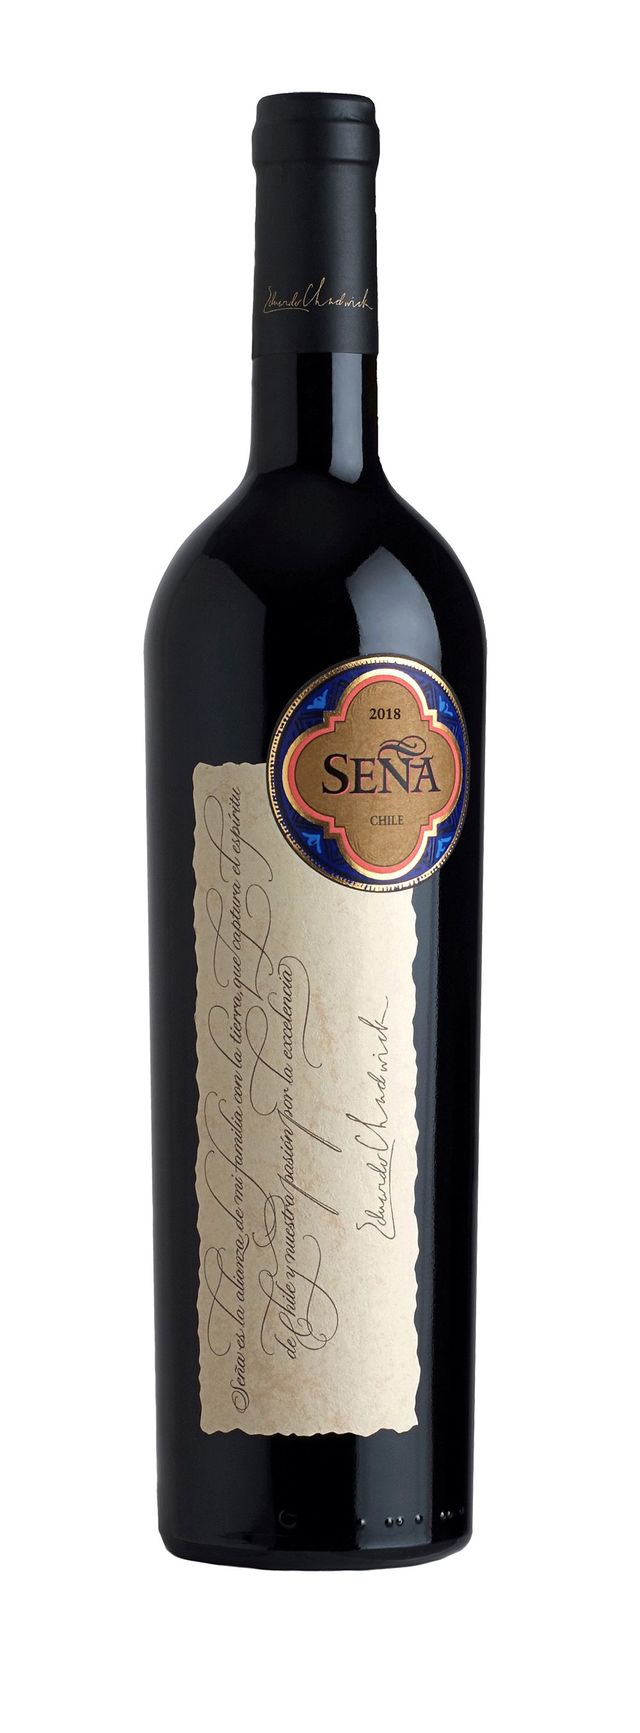 ヴィンテージ SENA セーニャ 1998年 赤 ワイン 750ml フルボディ購入時期や購入価格は不明です